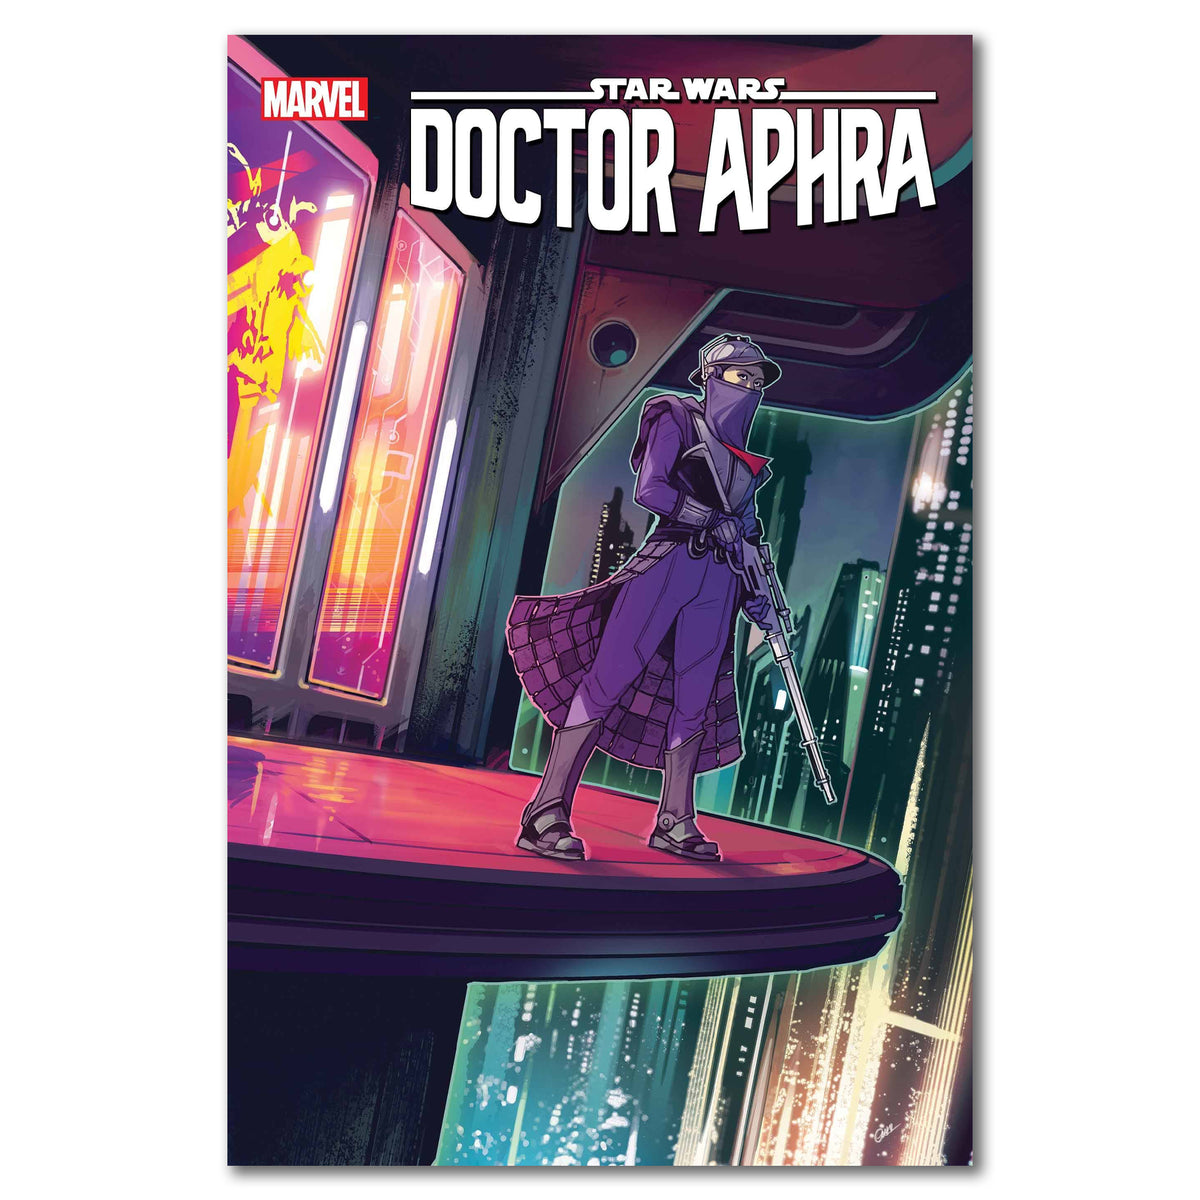 Star Wars Doctor Aphra #27 Cover Variant WIJNGAARD FINALSALE